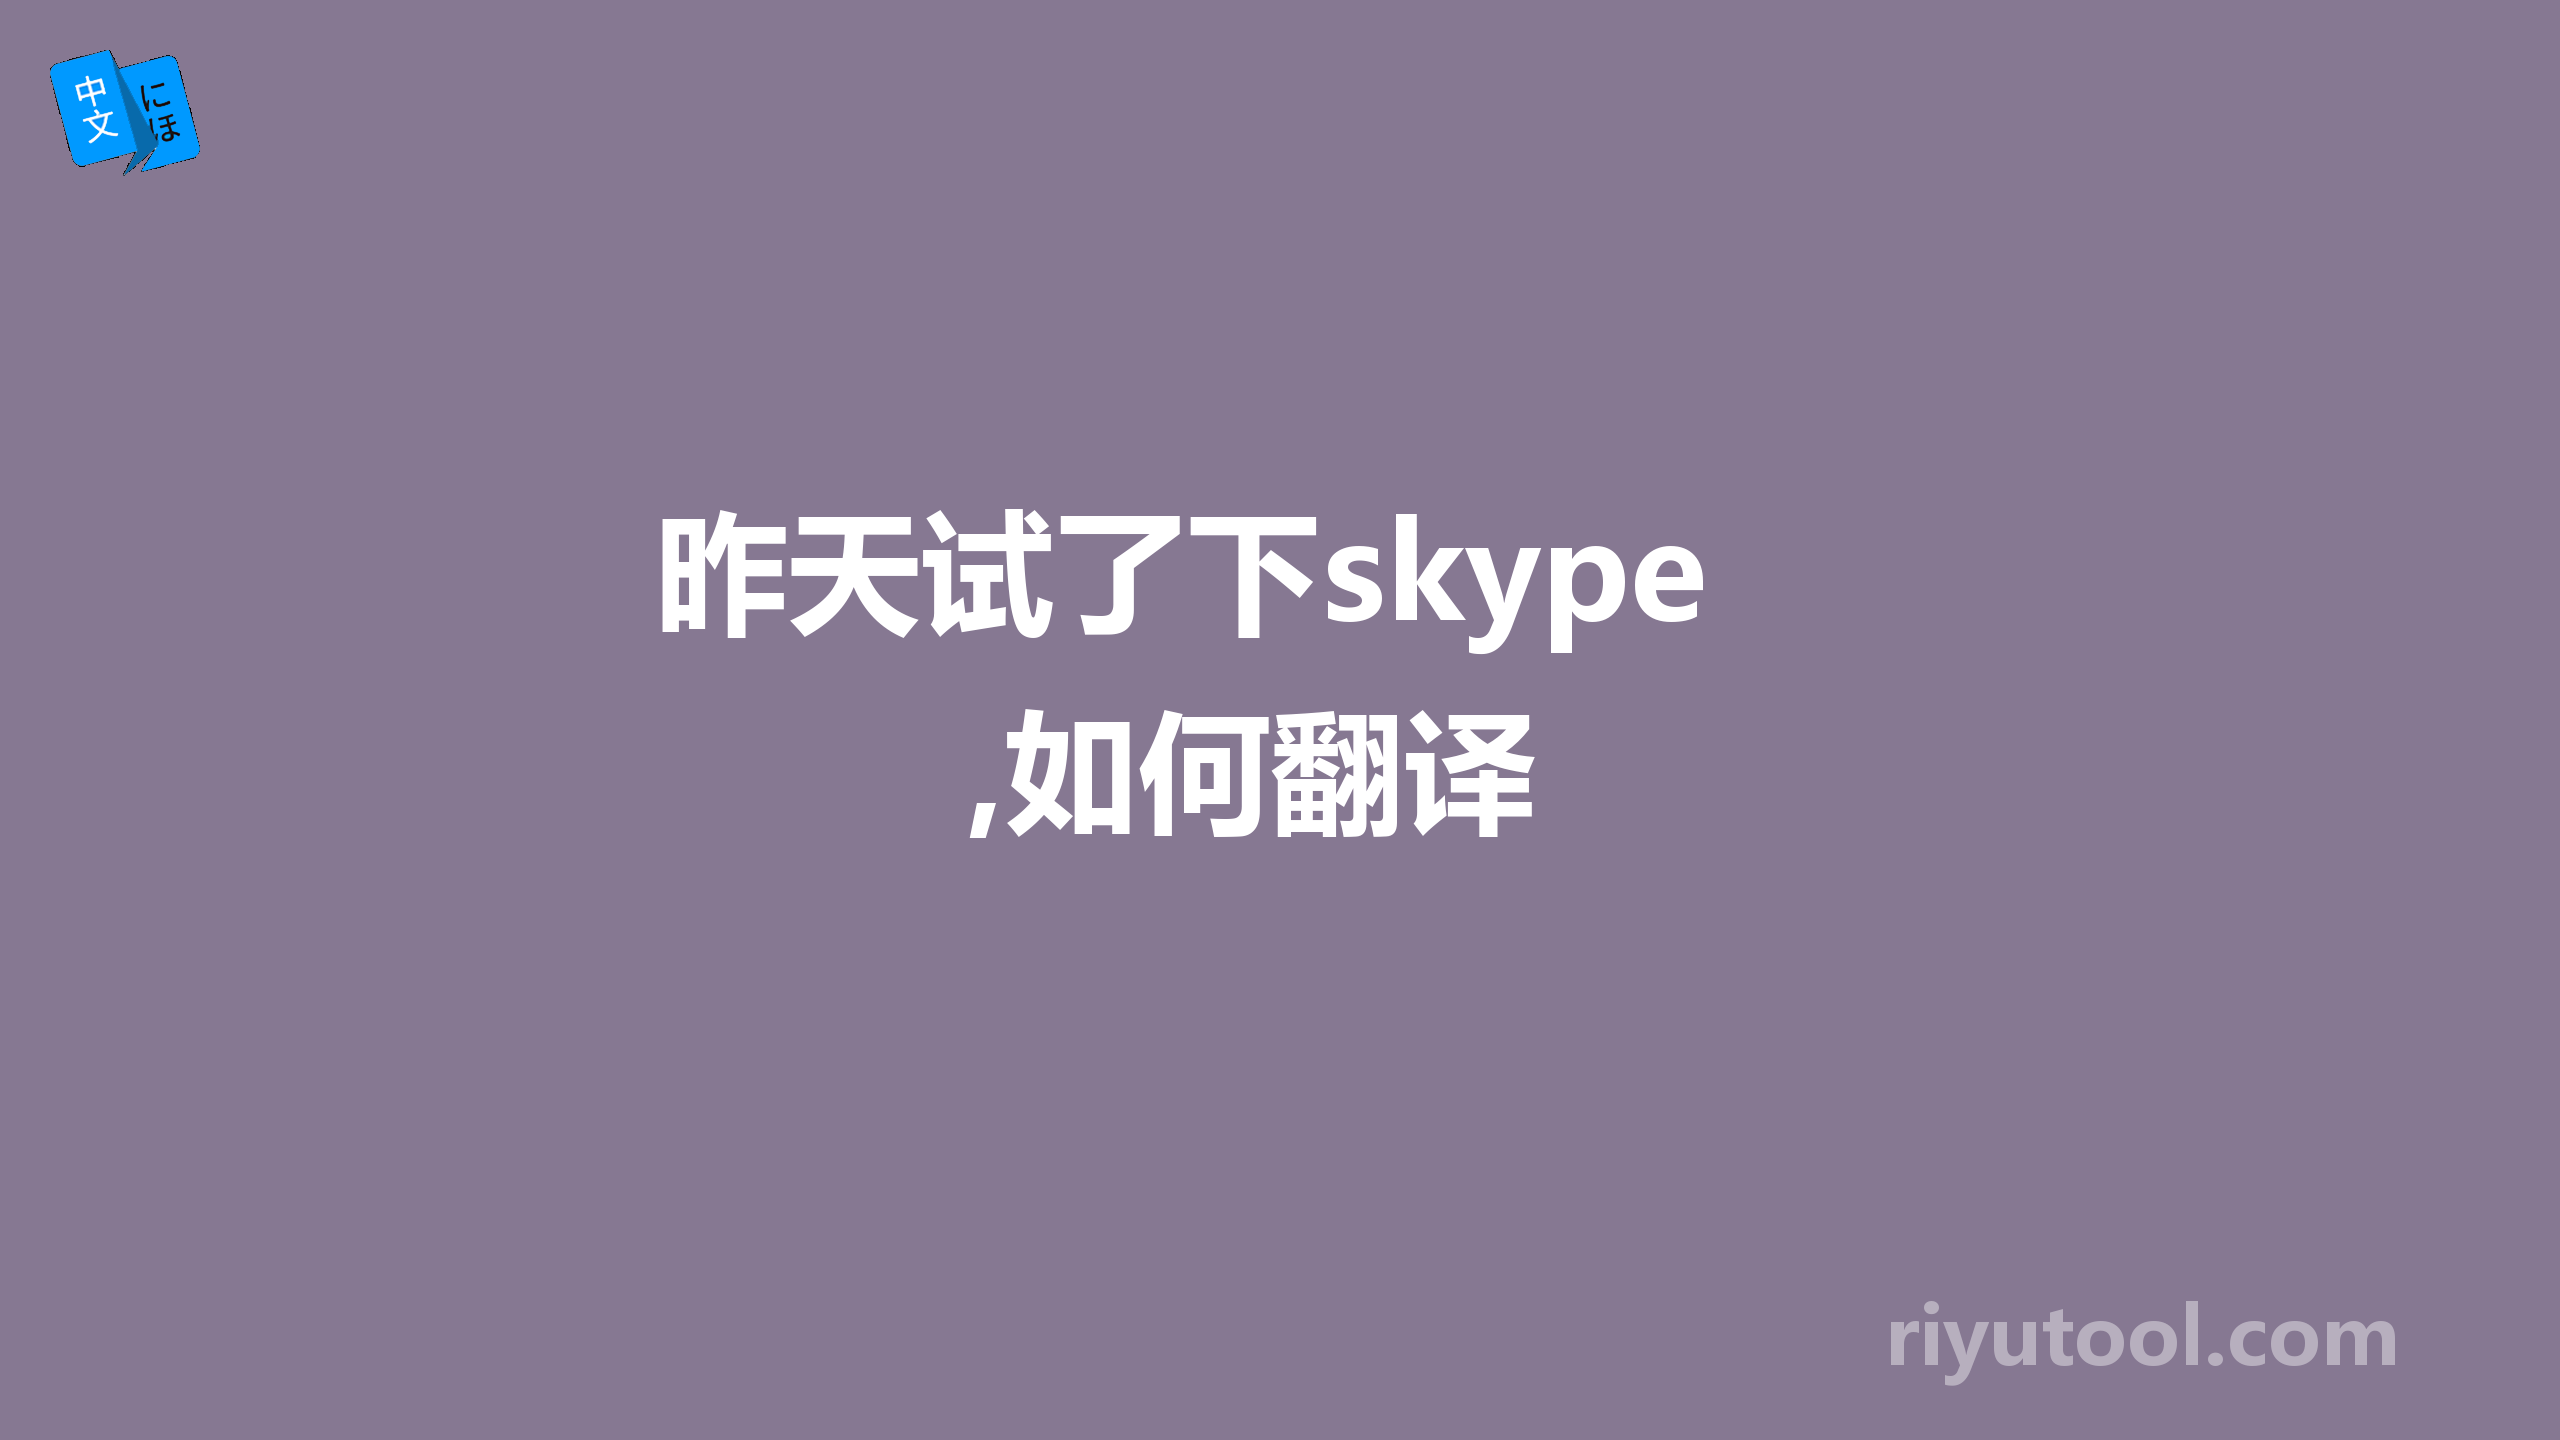 昨天试了下skype,如何翻译